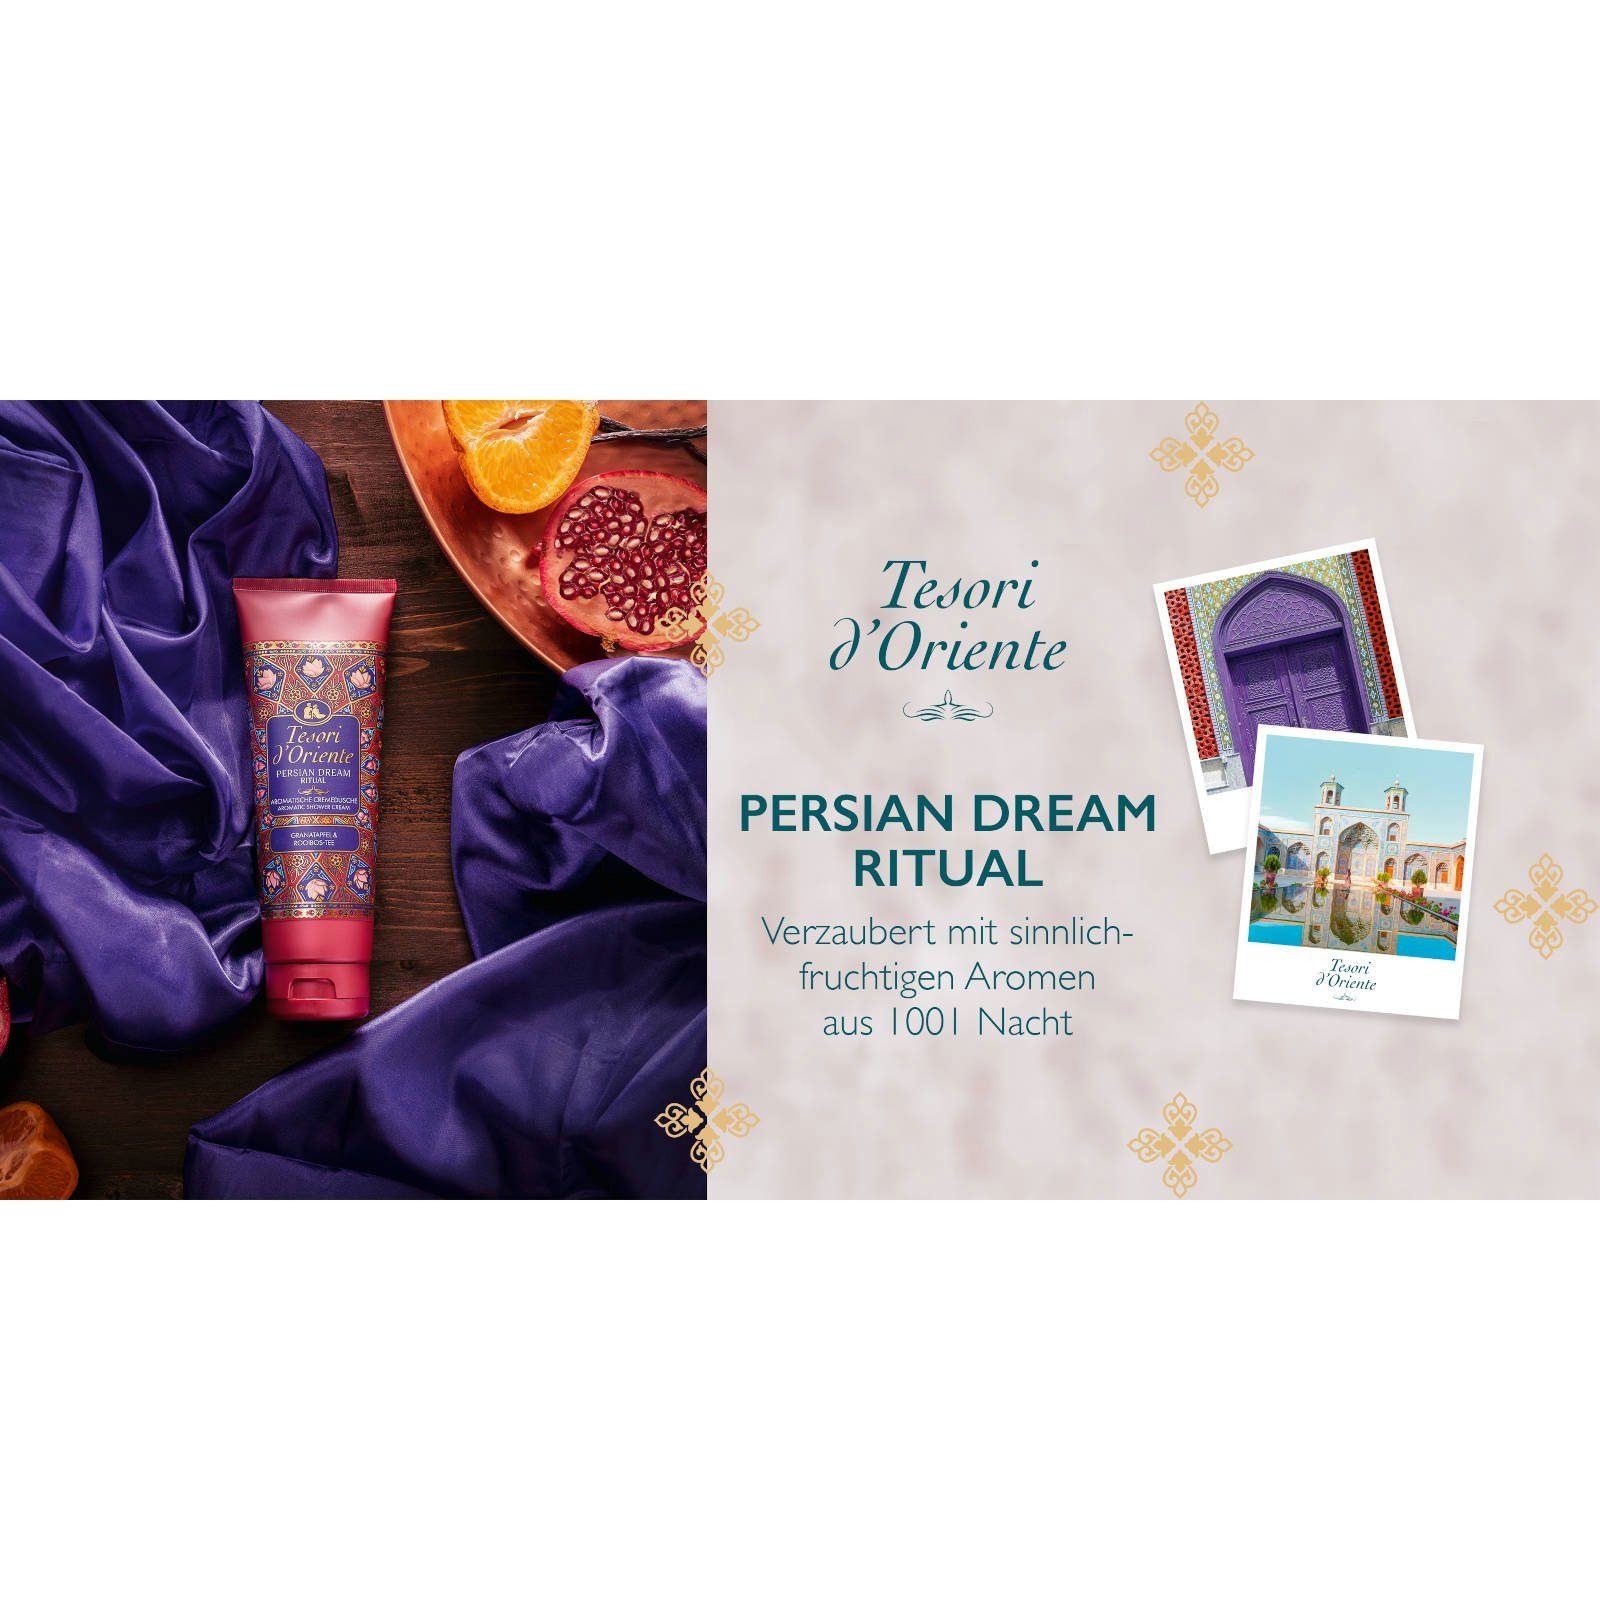 Tesori d´Oriente Persian Dream Vielfaltspaket Cremedusche Imperial Orchid Hammam Duschcreme